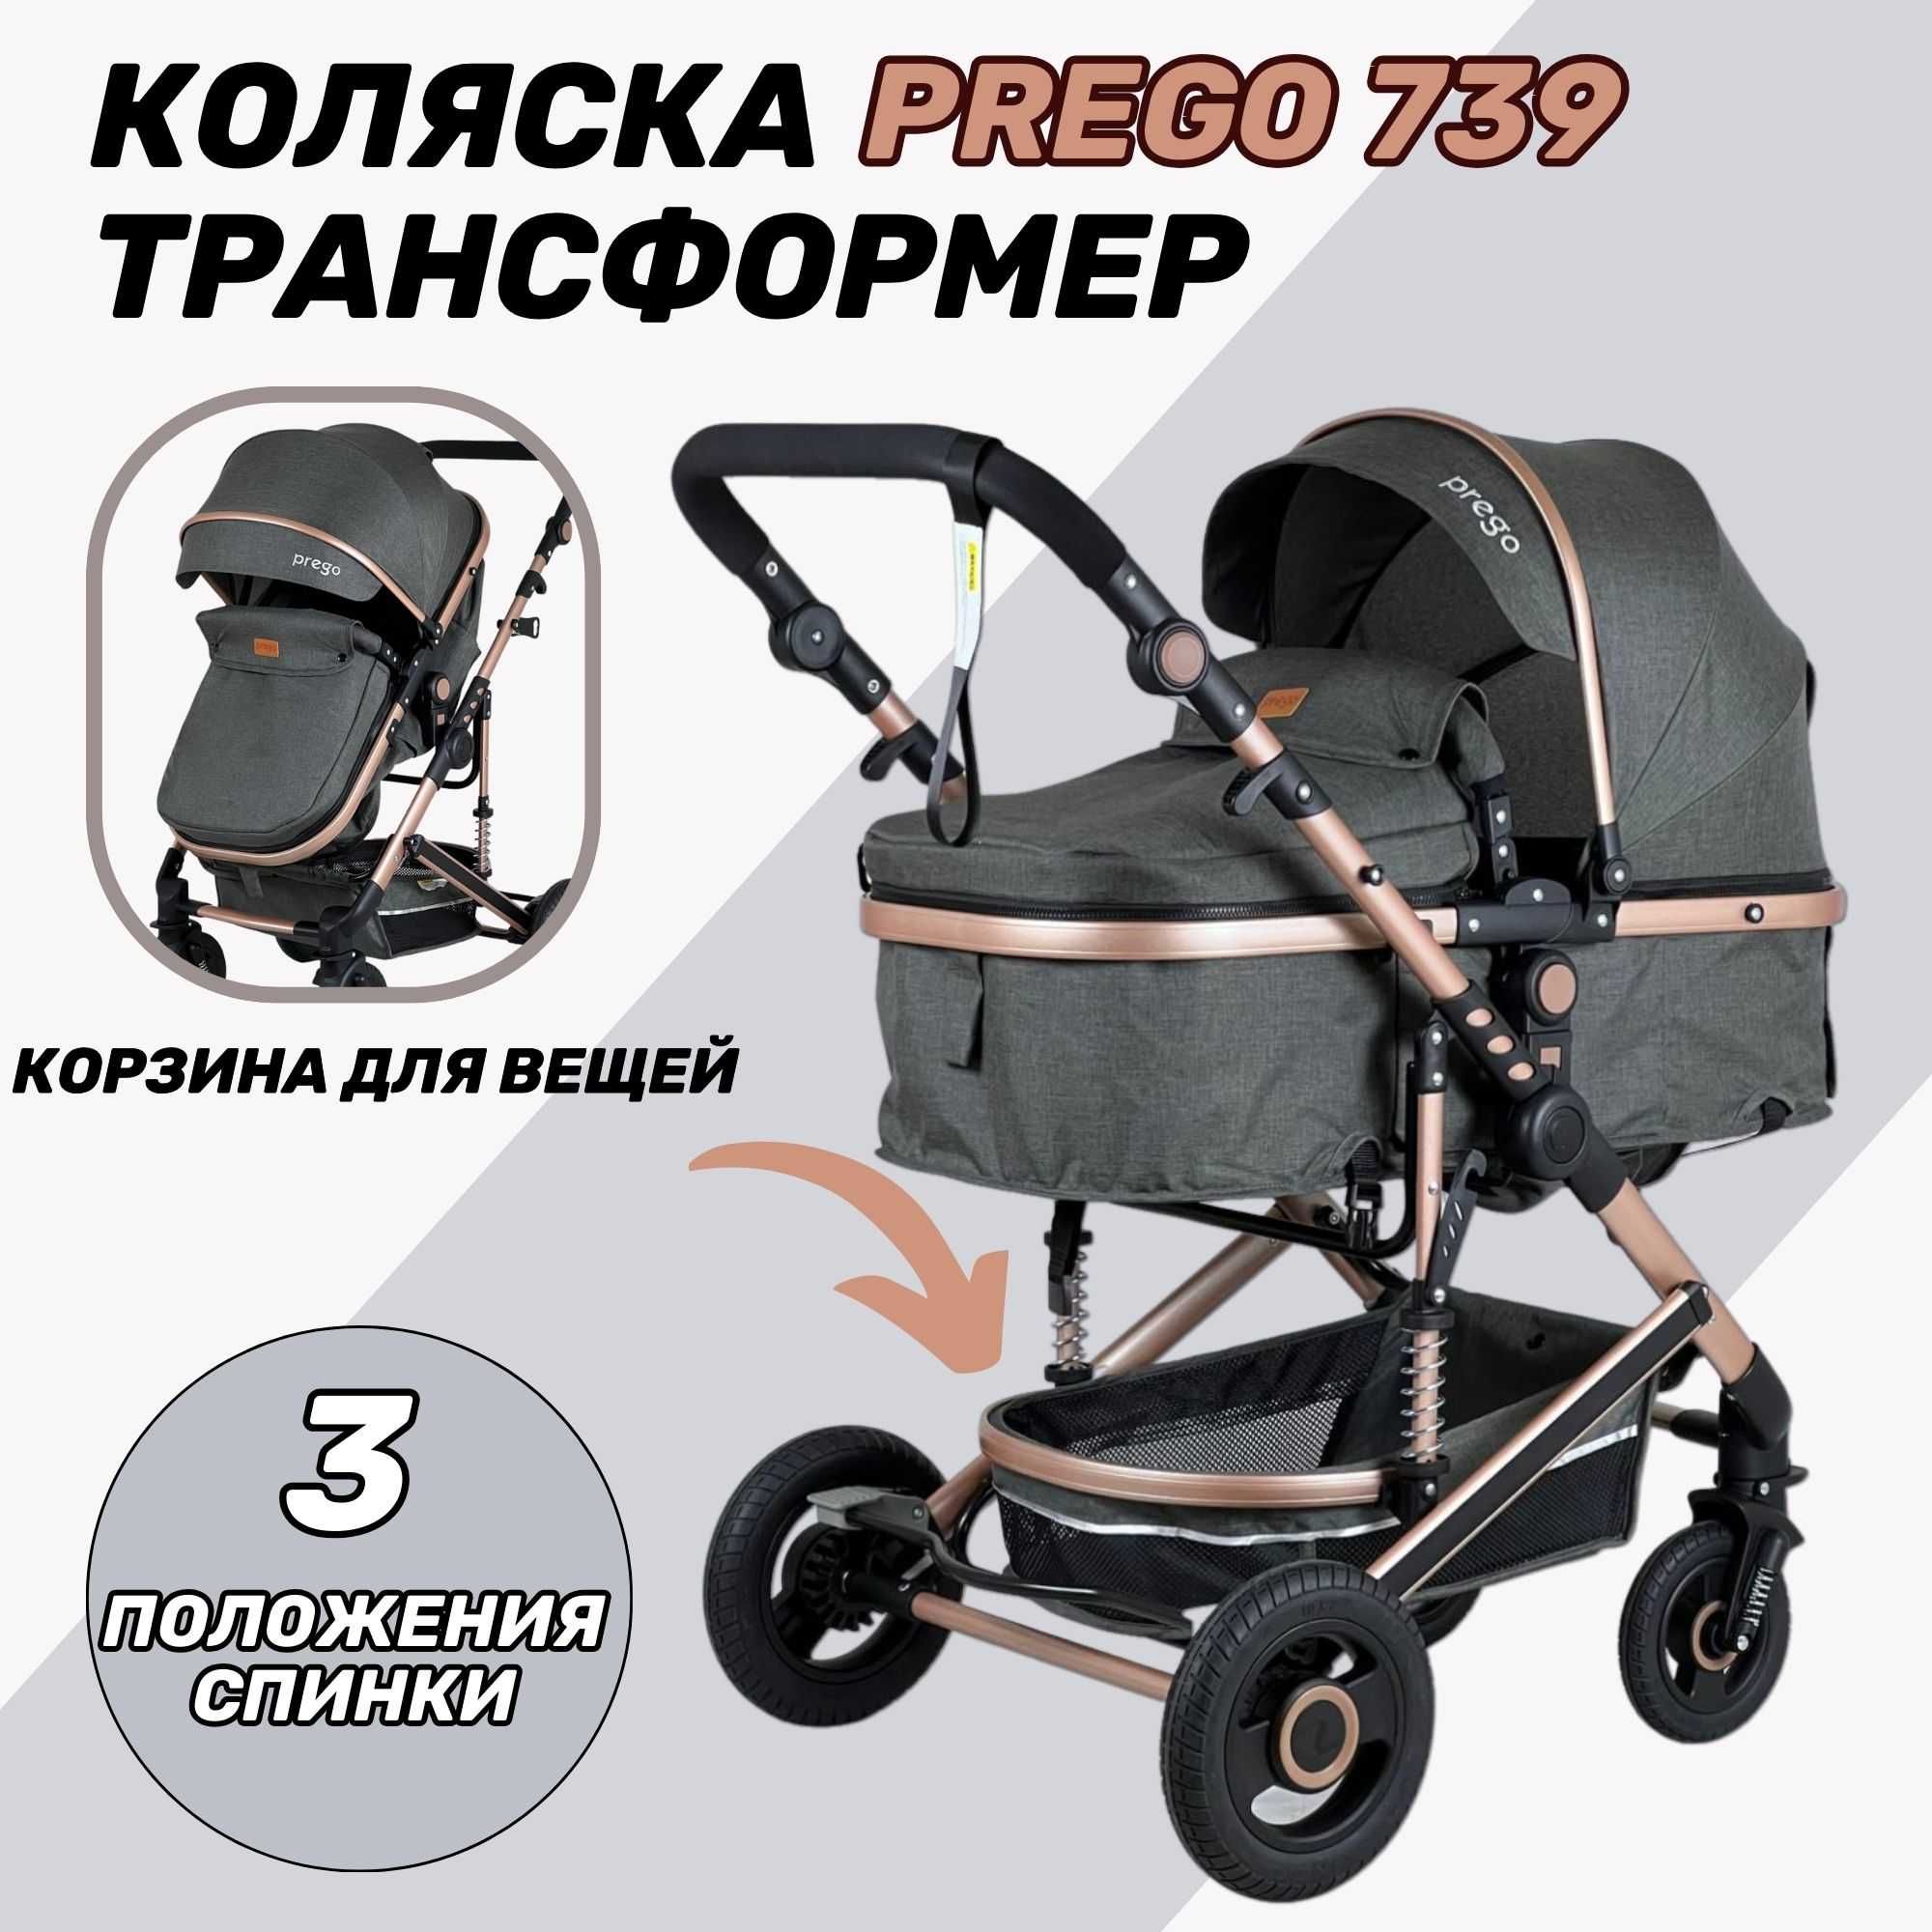 Детская коляска Prego 739